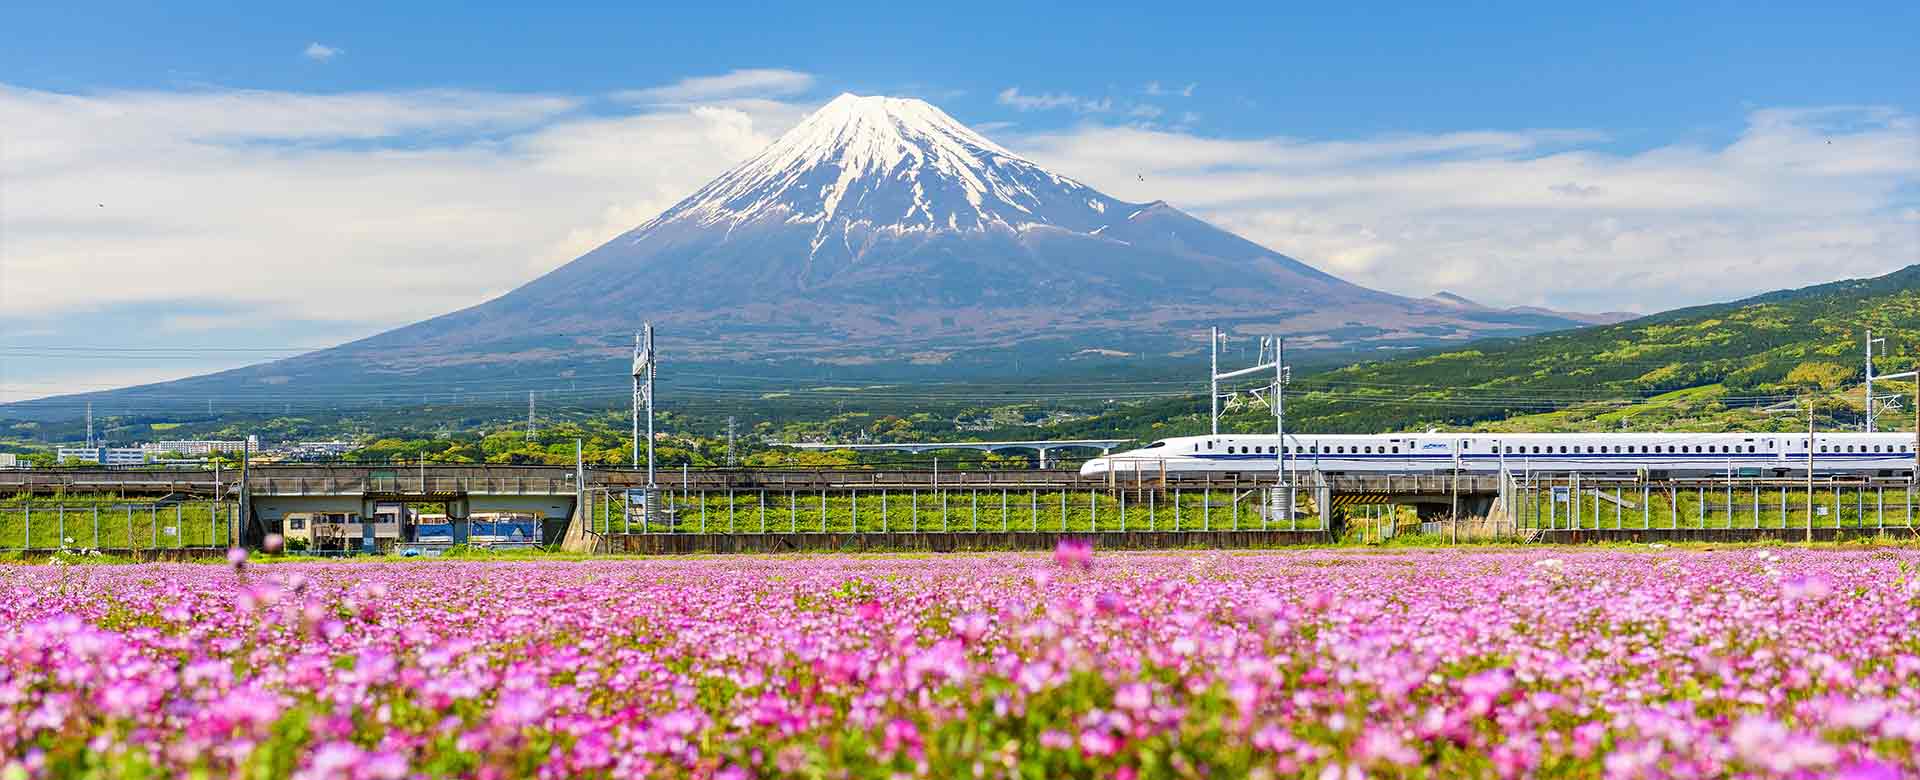 In apertura il trenoShinkansen tra il monte Fuji e la Shibazakura, la fioritura del muschio rosa a Shizuoka